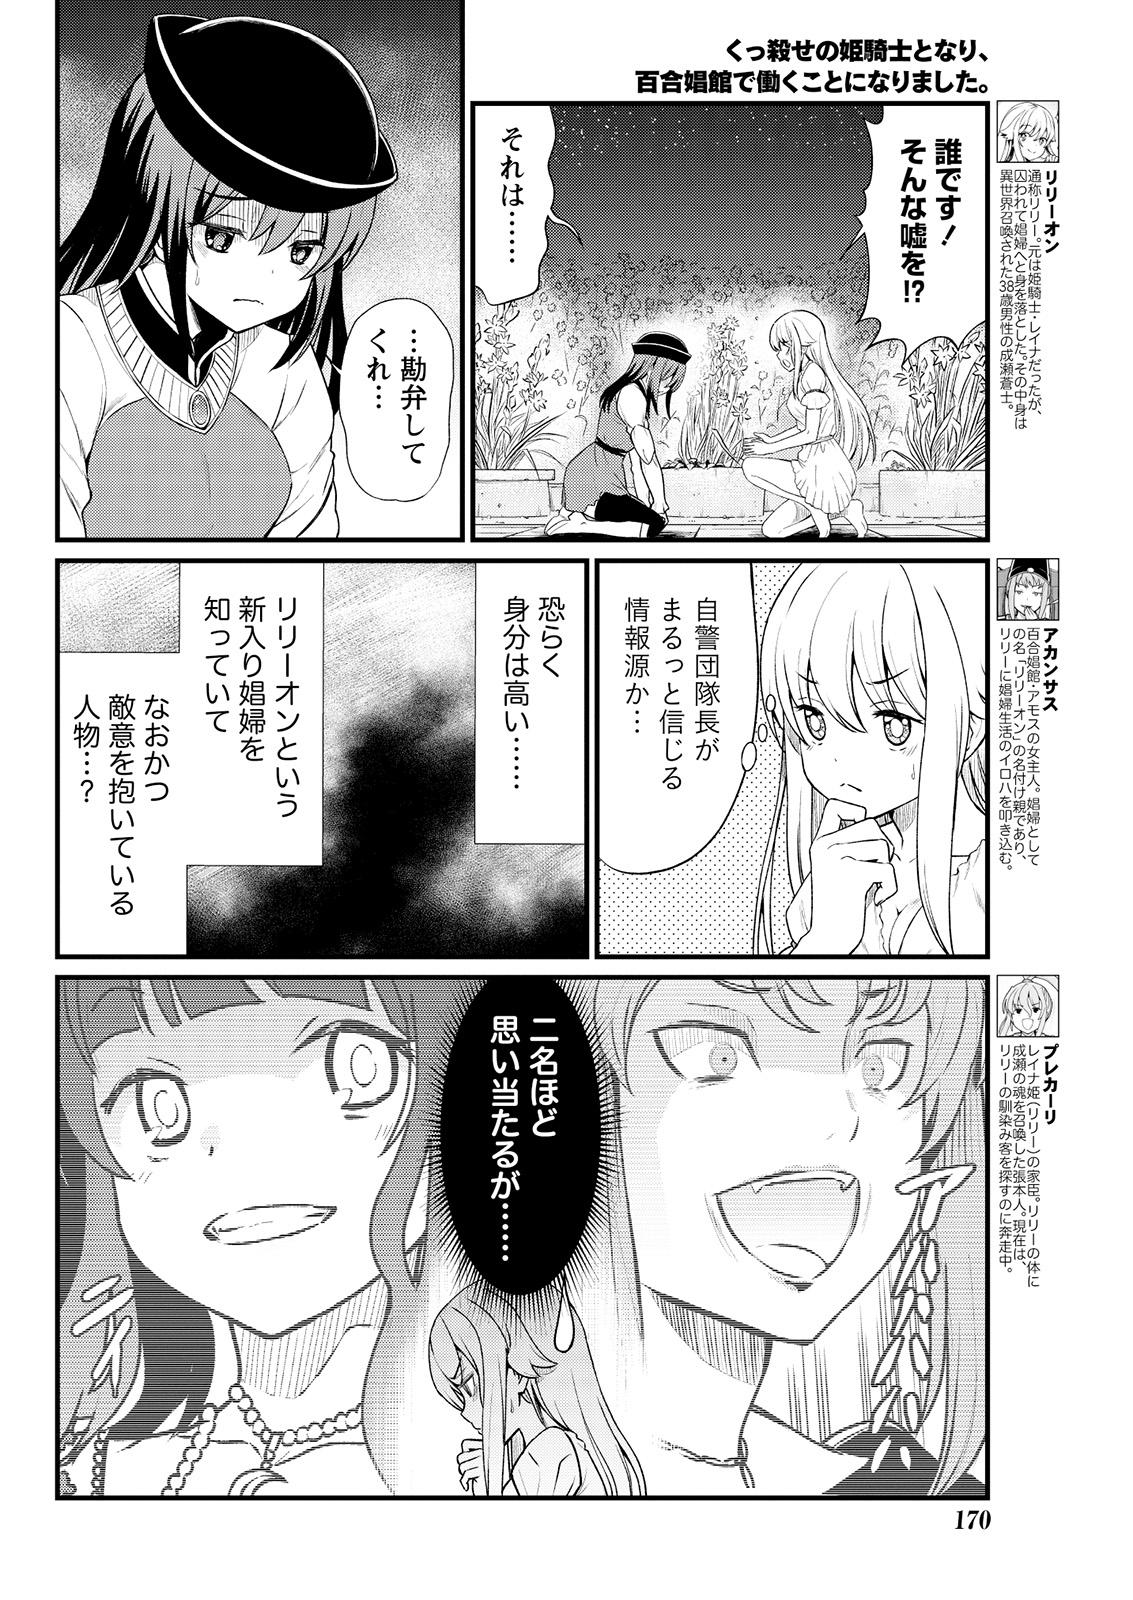 Gostosa Kukkorose no Himekishi to nari, Yuri Shoukan de Hataraku koto ni Narimashita. 6 Made - Page 6